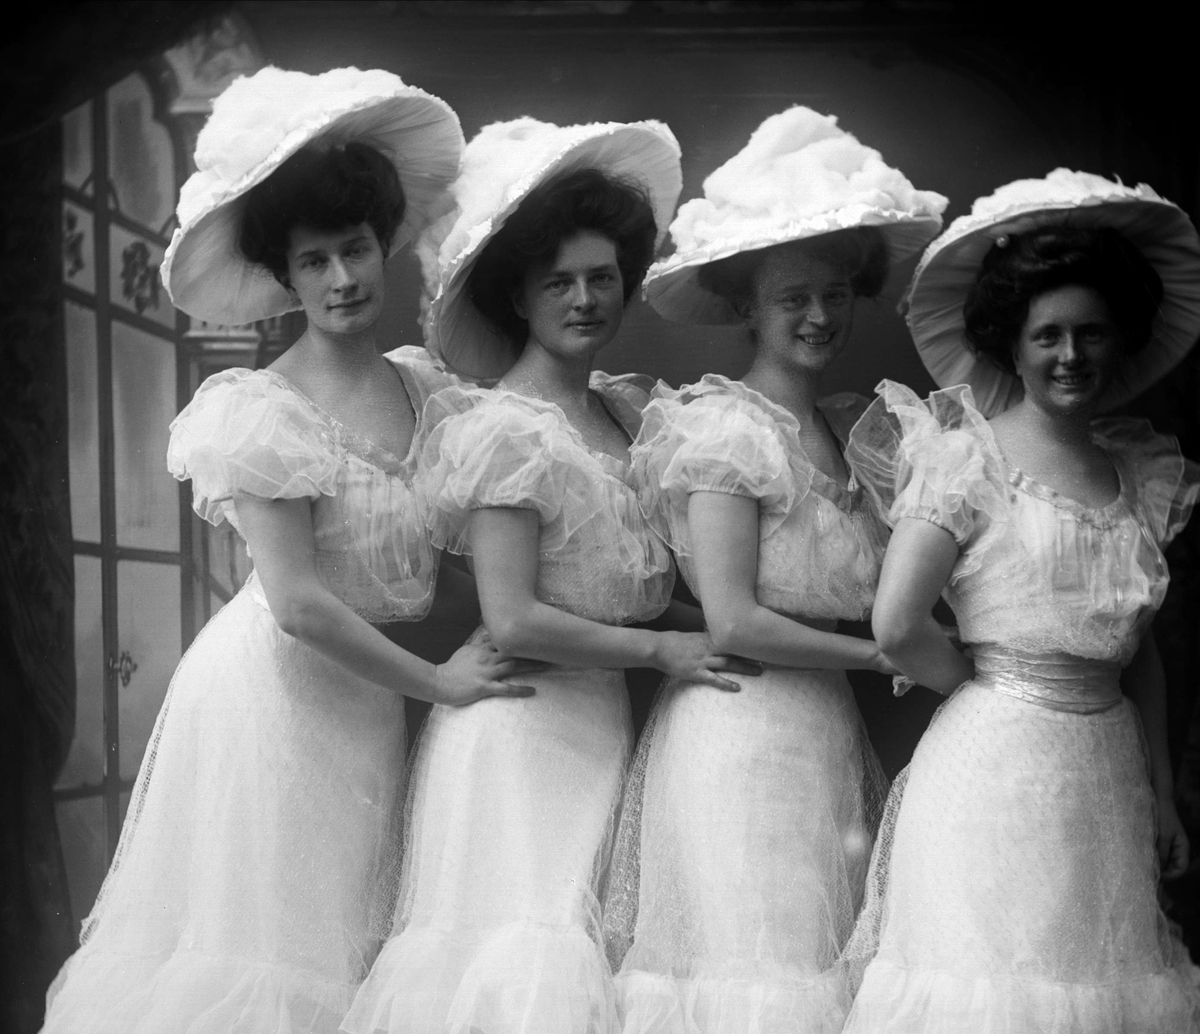 Gruppeportrett, fire kvinner kledd i hvitt. Dansere?